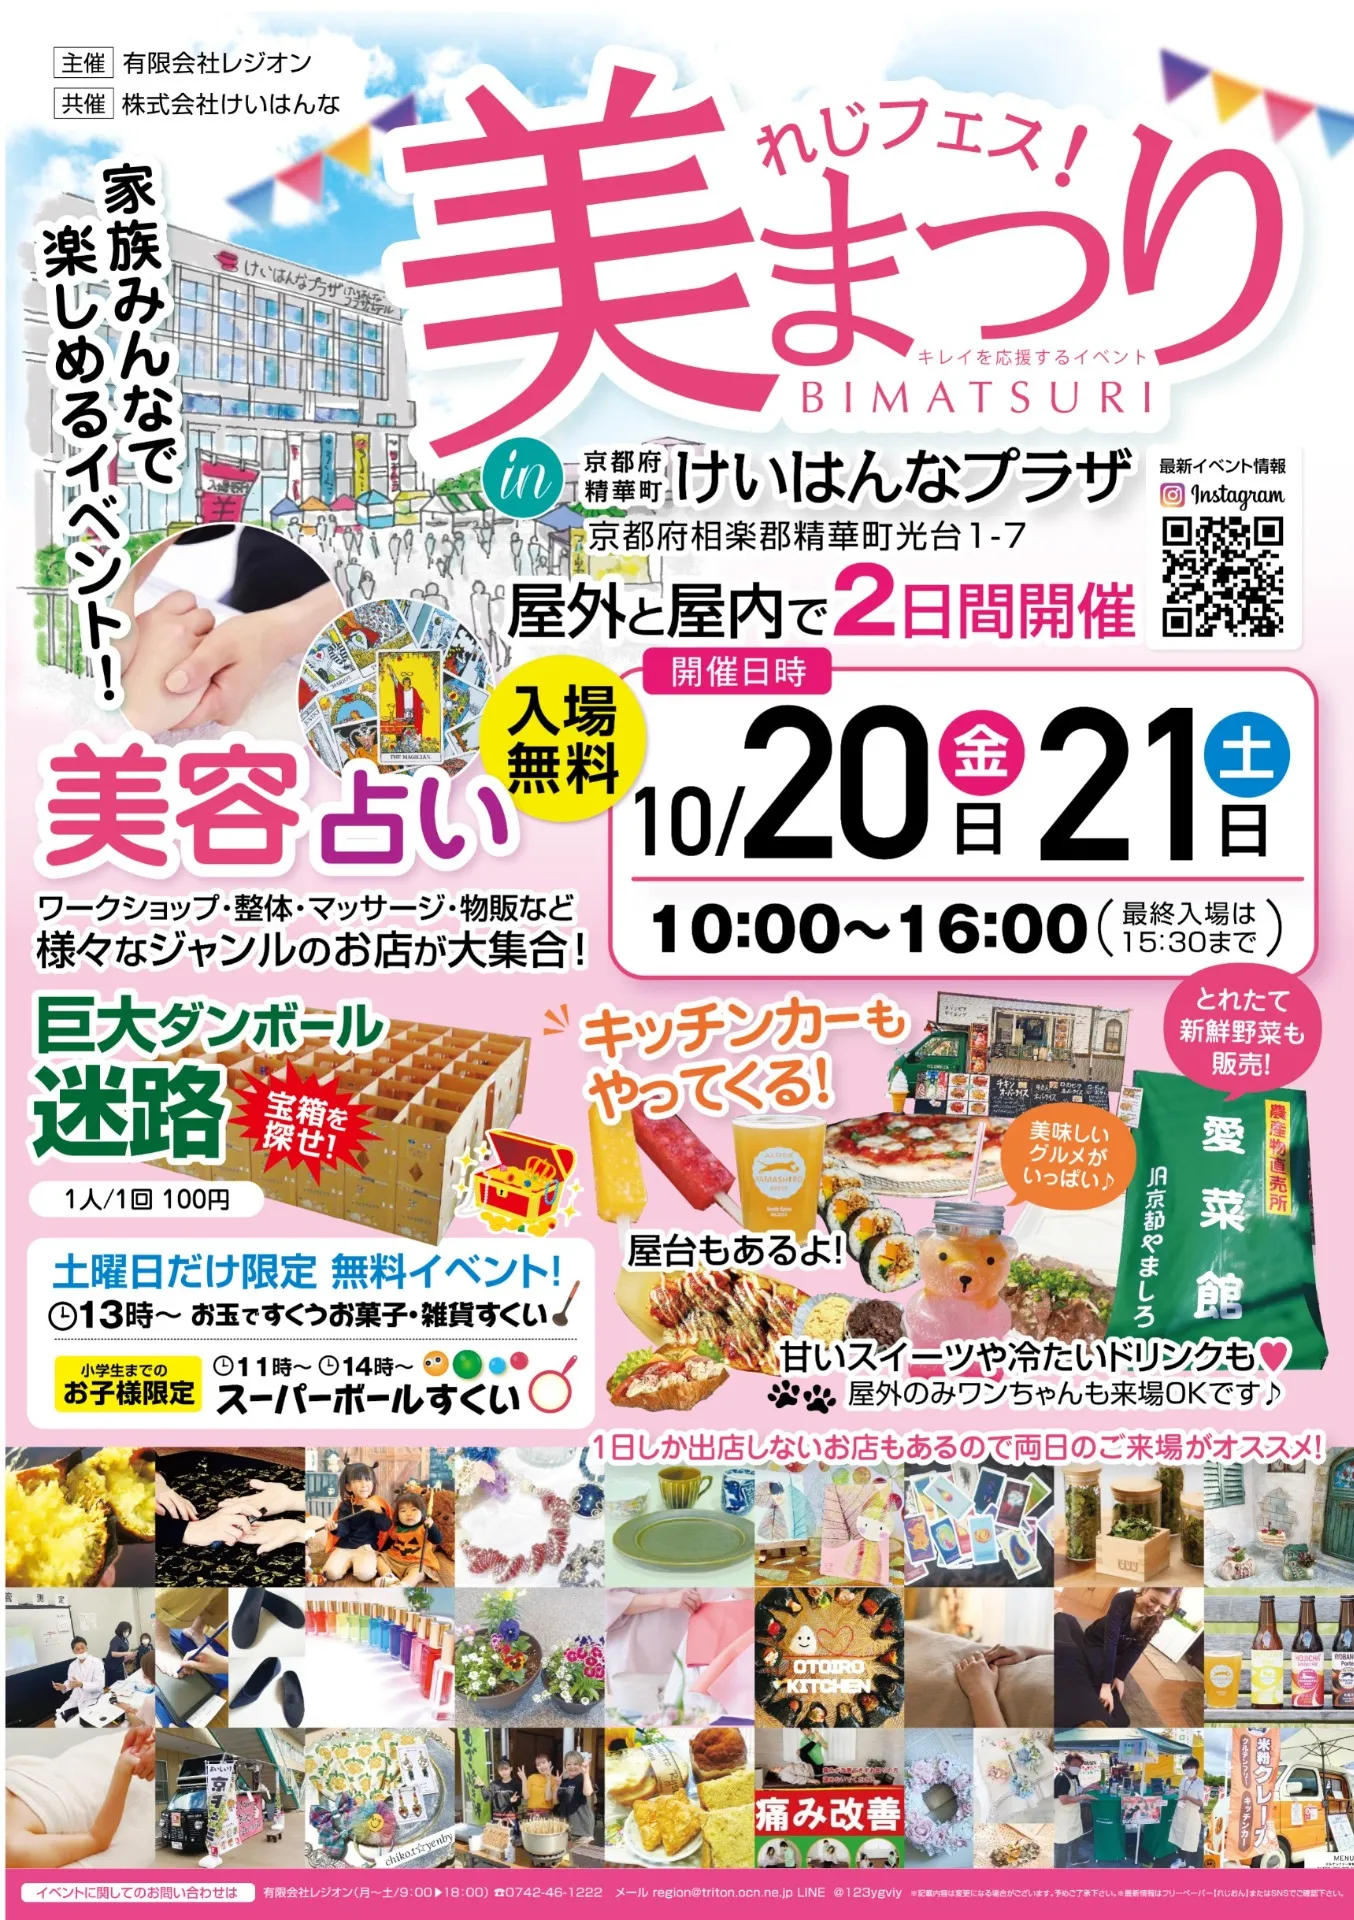 10月20,21日京都精華町で美まつり開催のお知らせ